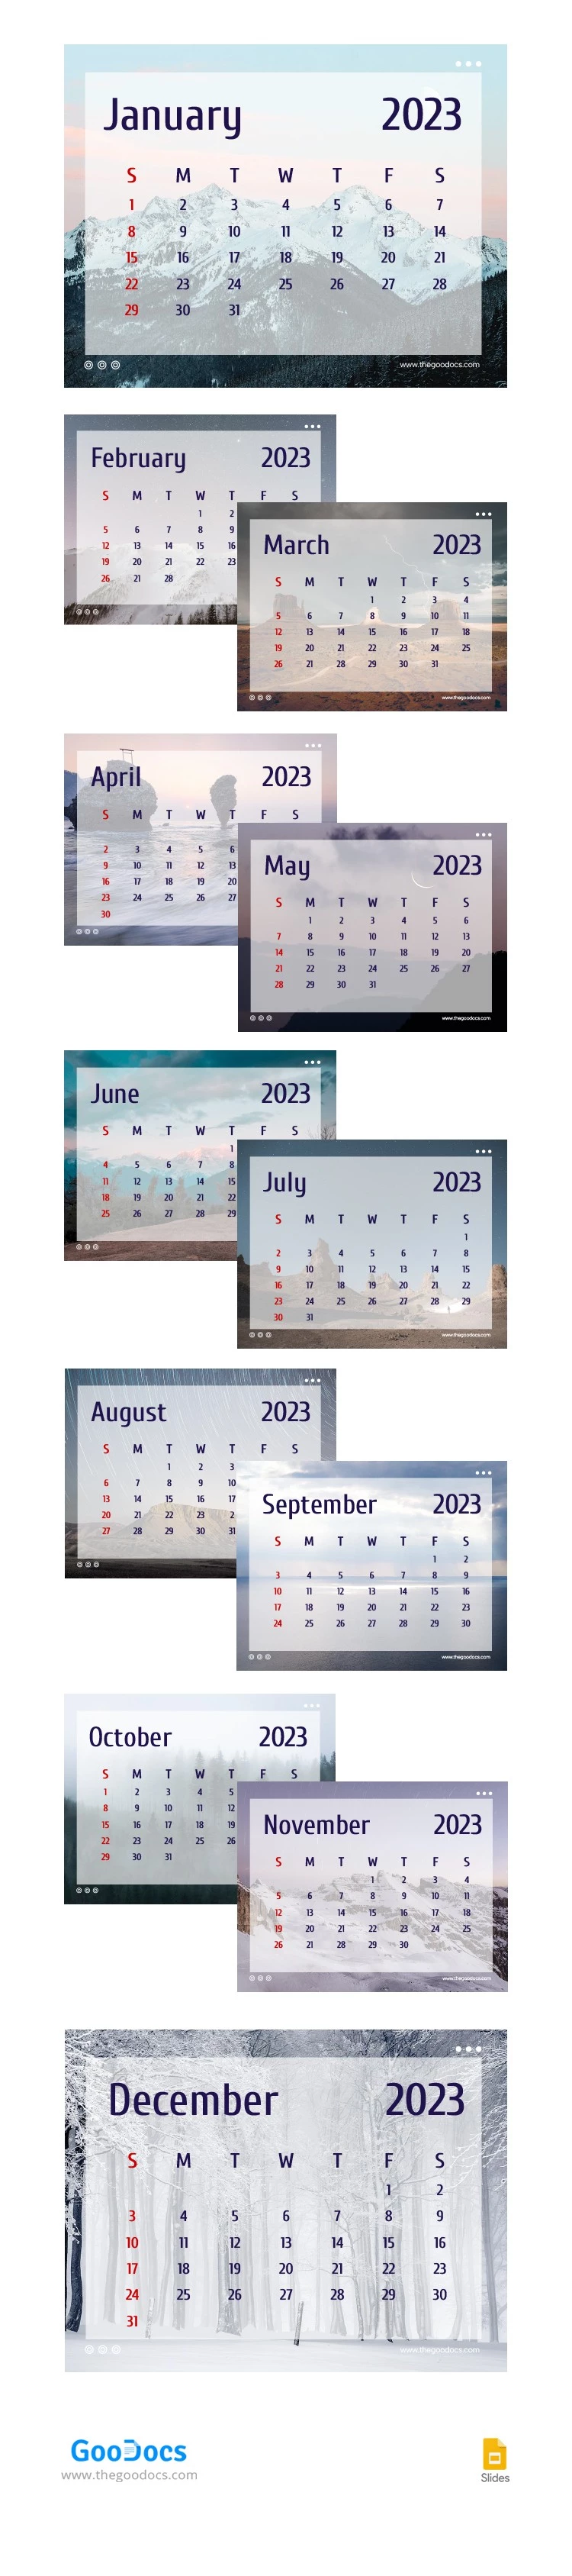 Naturkalender 2023 - free Google Docs Template - 10064722